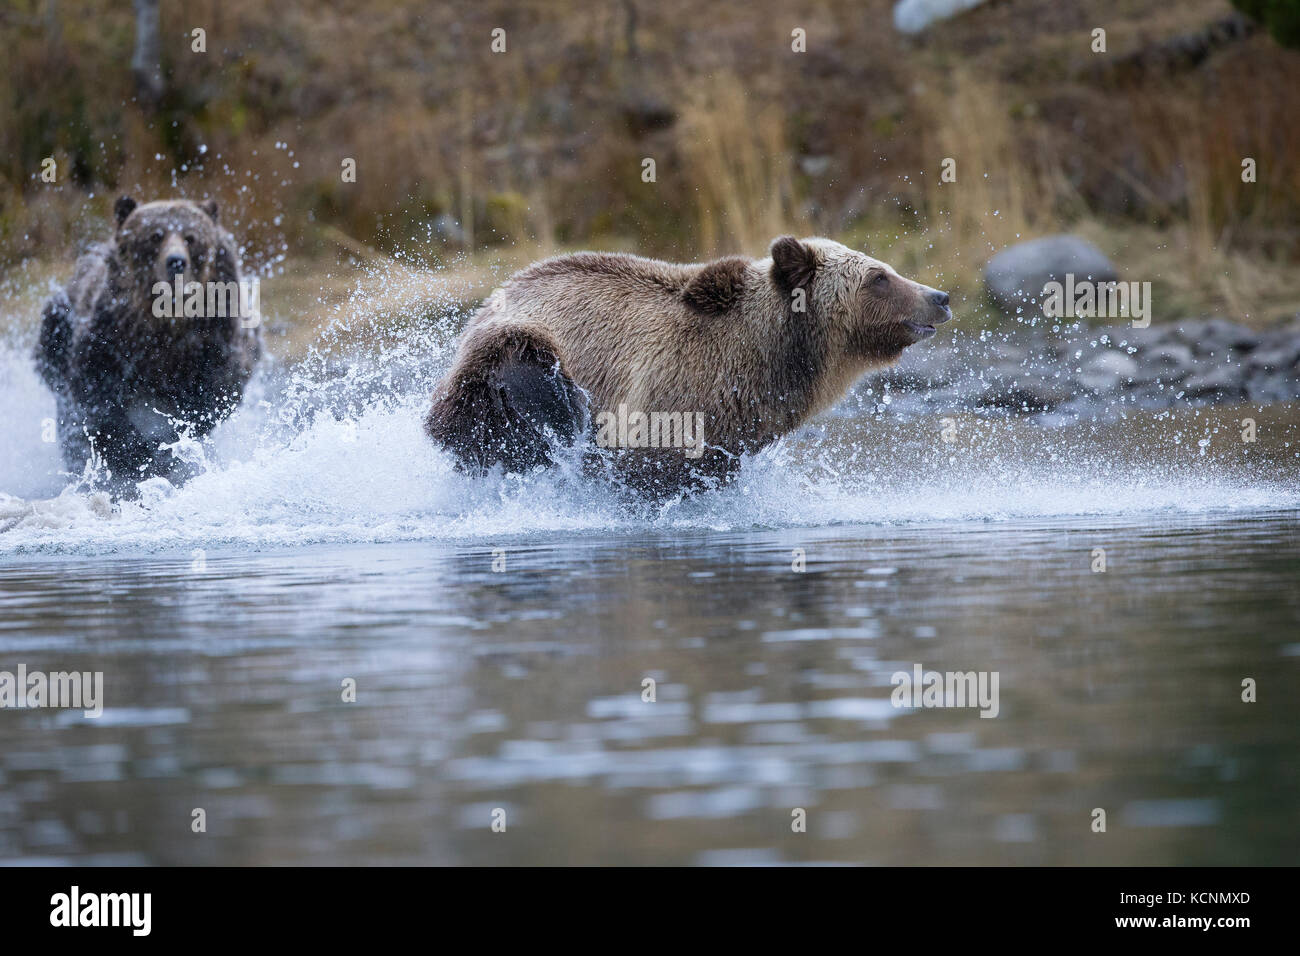 Grizzlybär (Ursus arctos Horribilis), Weibliche jagen cloloured subdault (leichtere) von ihren Jungen (hinter der Kamera), Chilcotin Region, British Columbia, Kanada. Stockfoto